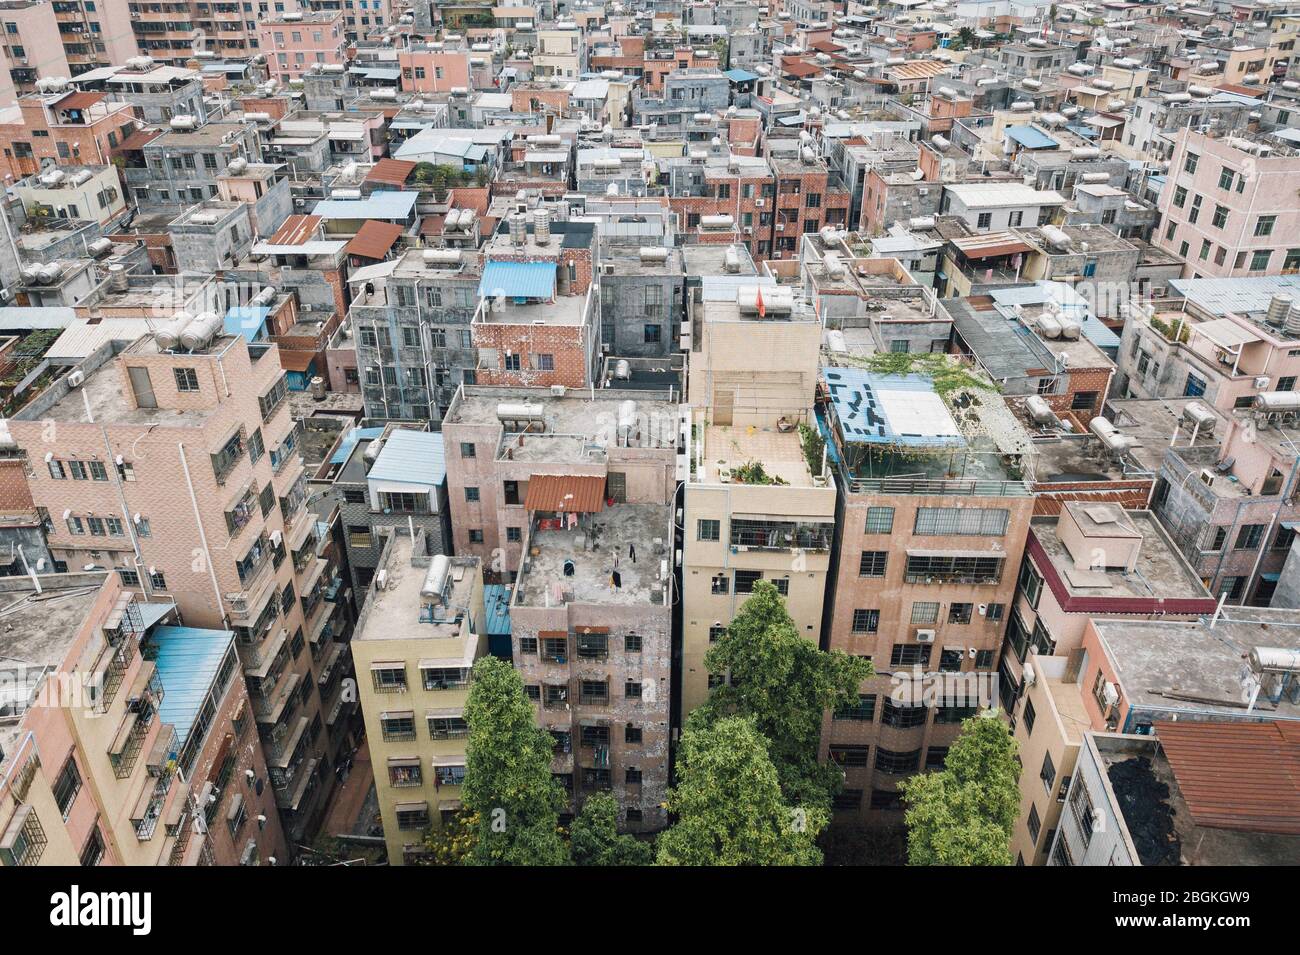 Una vista aerea di file di edifici residenti di varie altezze erigendo al centro della città, formando un mondo incompatibile con i cieli moderni circostanti Foto Stock